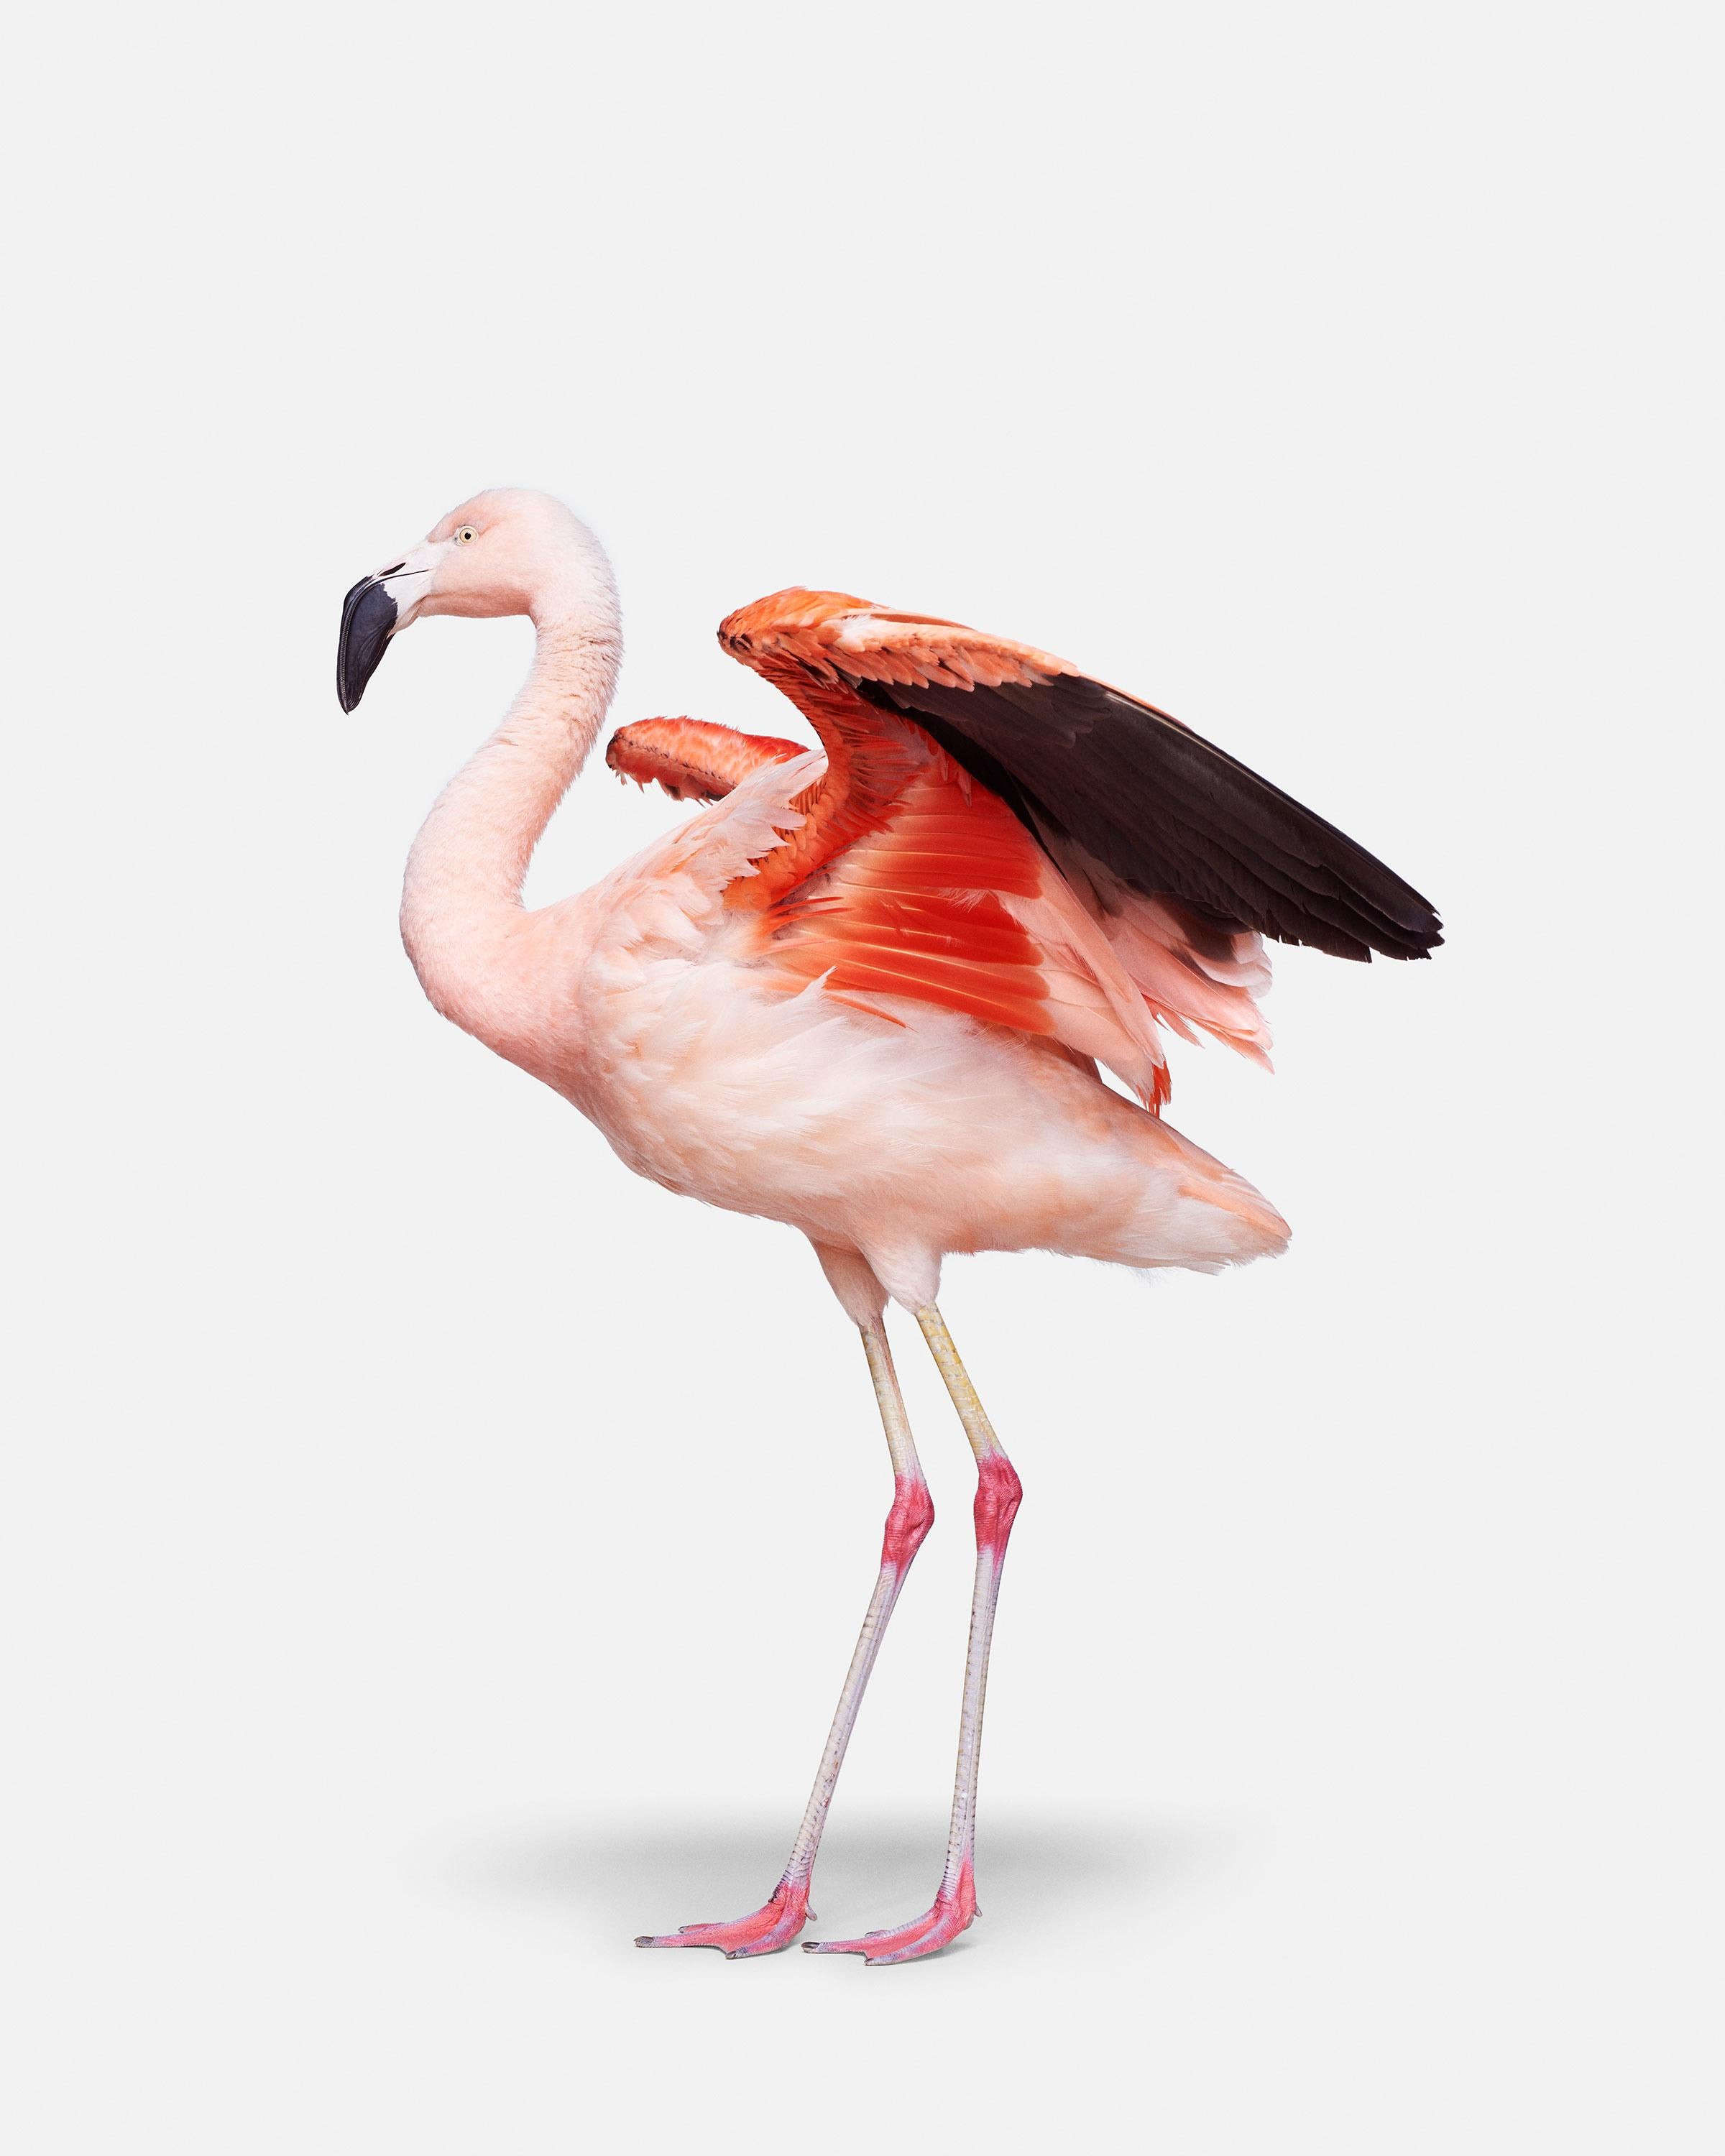 Flamingo Nr. 3
Verfügbare Größen:
37,5" x 30" Auflage von 15
50" x 40"	 Auflage von 10 Stück
60" x 48"	 Auflage von 5

Alejandra:
Vor Alejandra mussten wir den Hut ziehen, denn Mutter Natur ist immer wieder beeindruckend, und die Farbe und Form